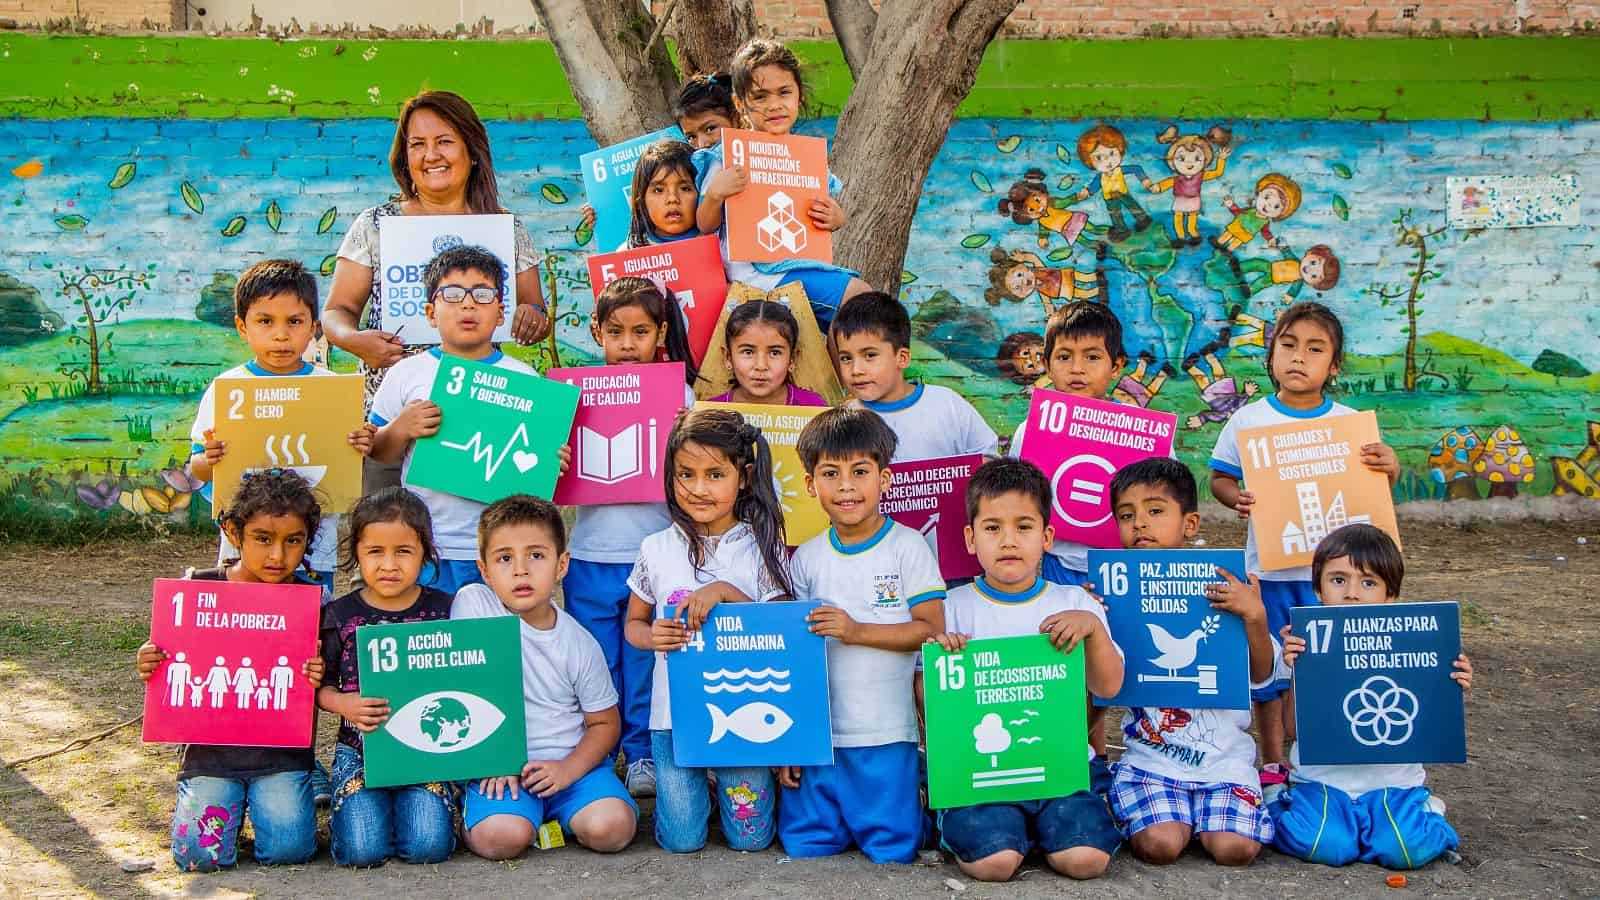 Children holding SDGs signs